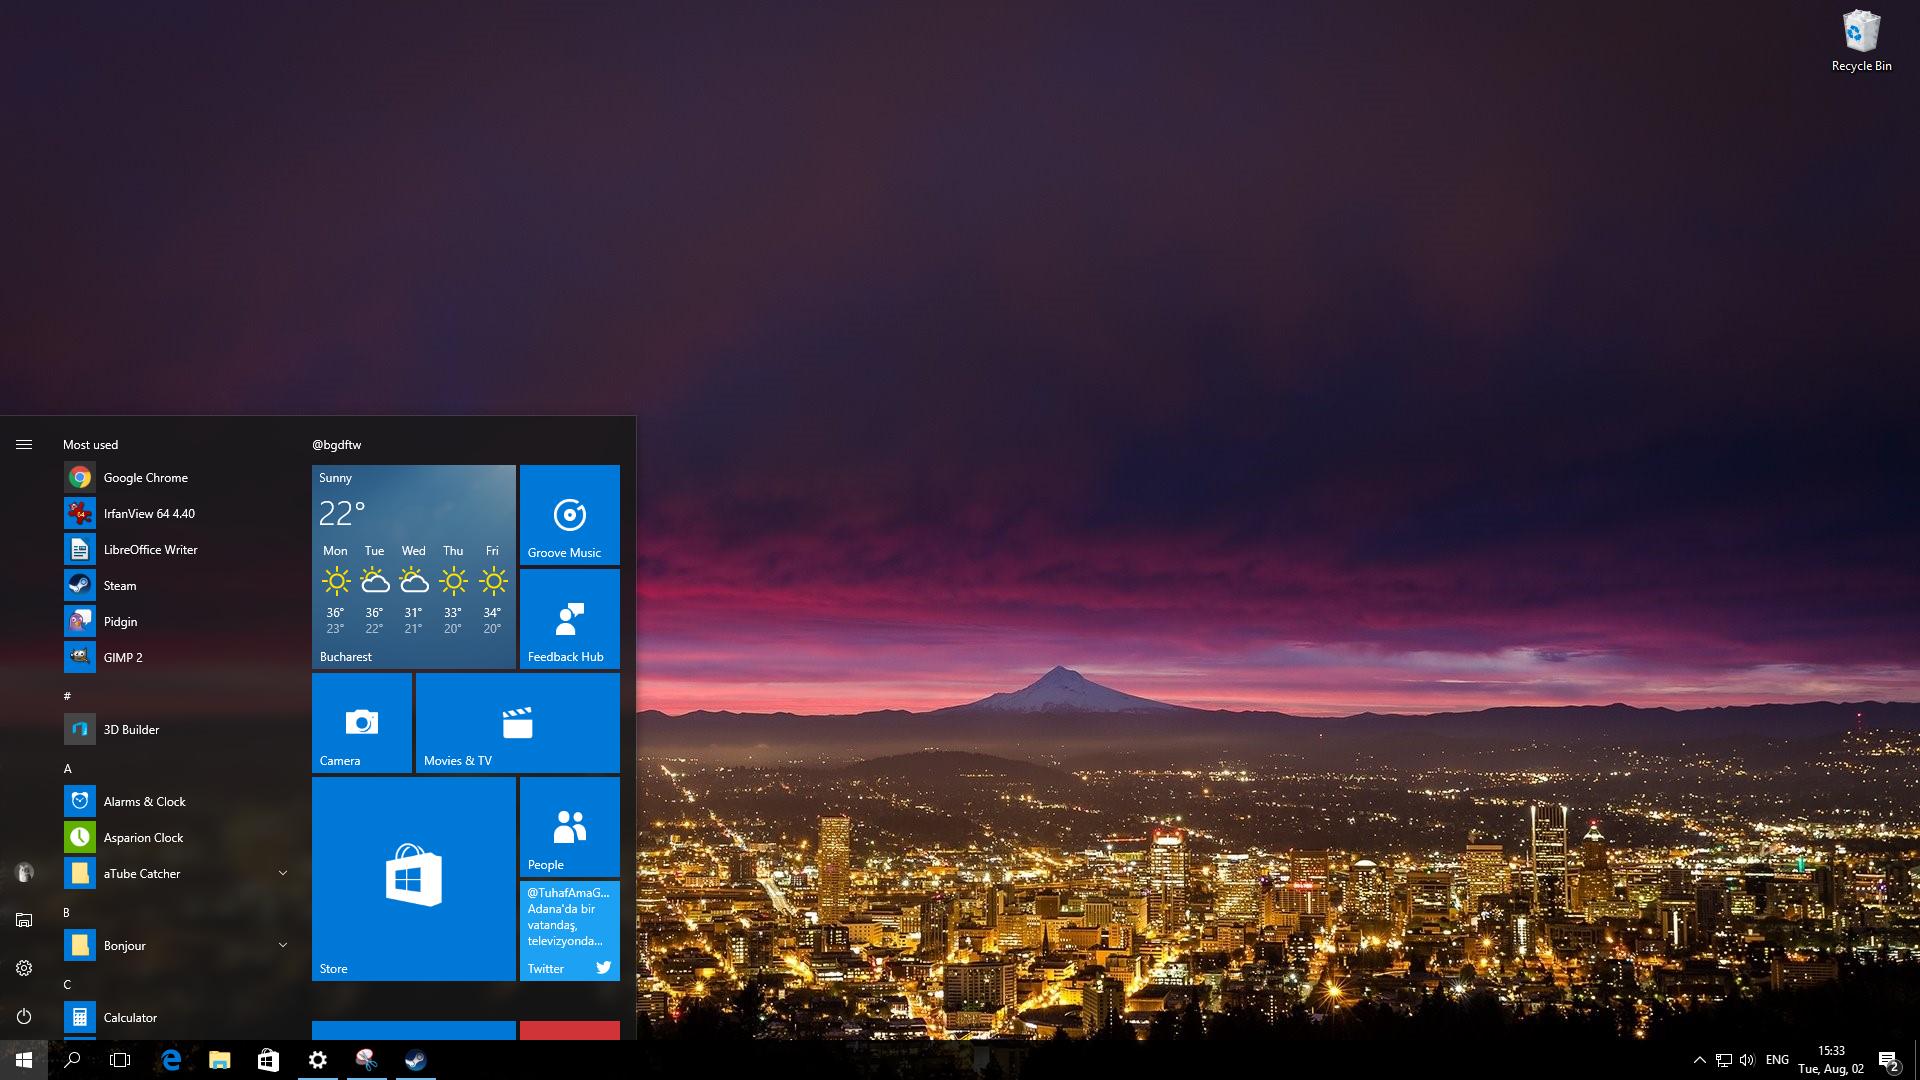 windows 10 anniversary update start menu revert